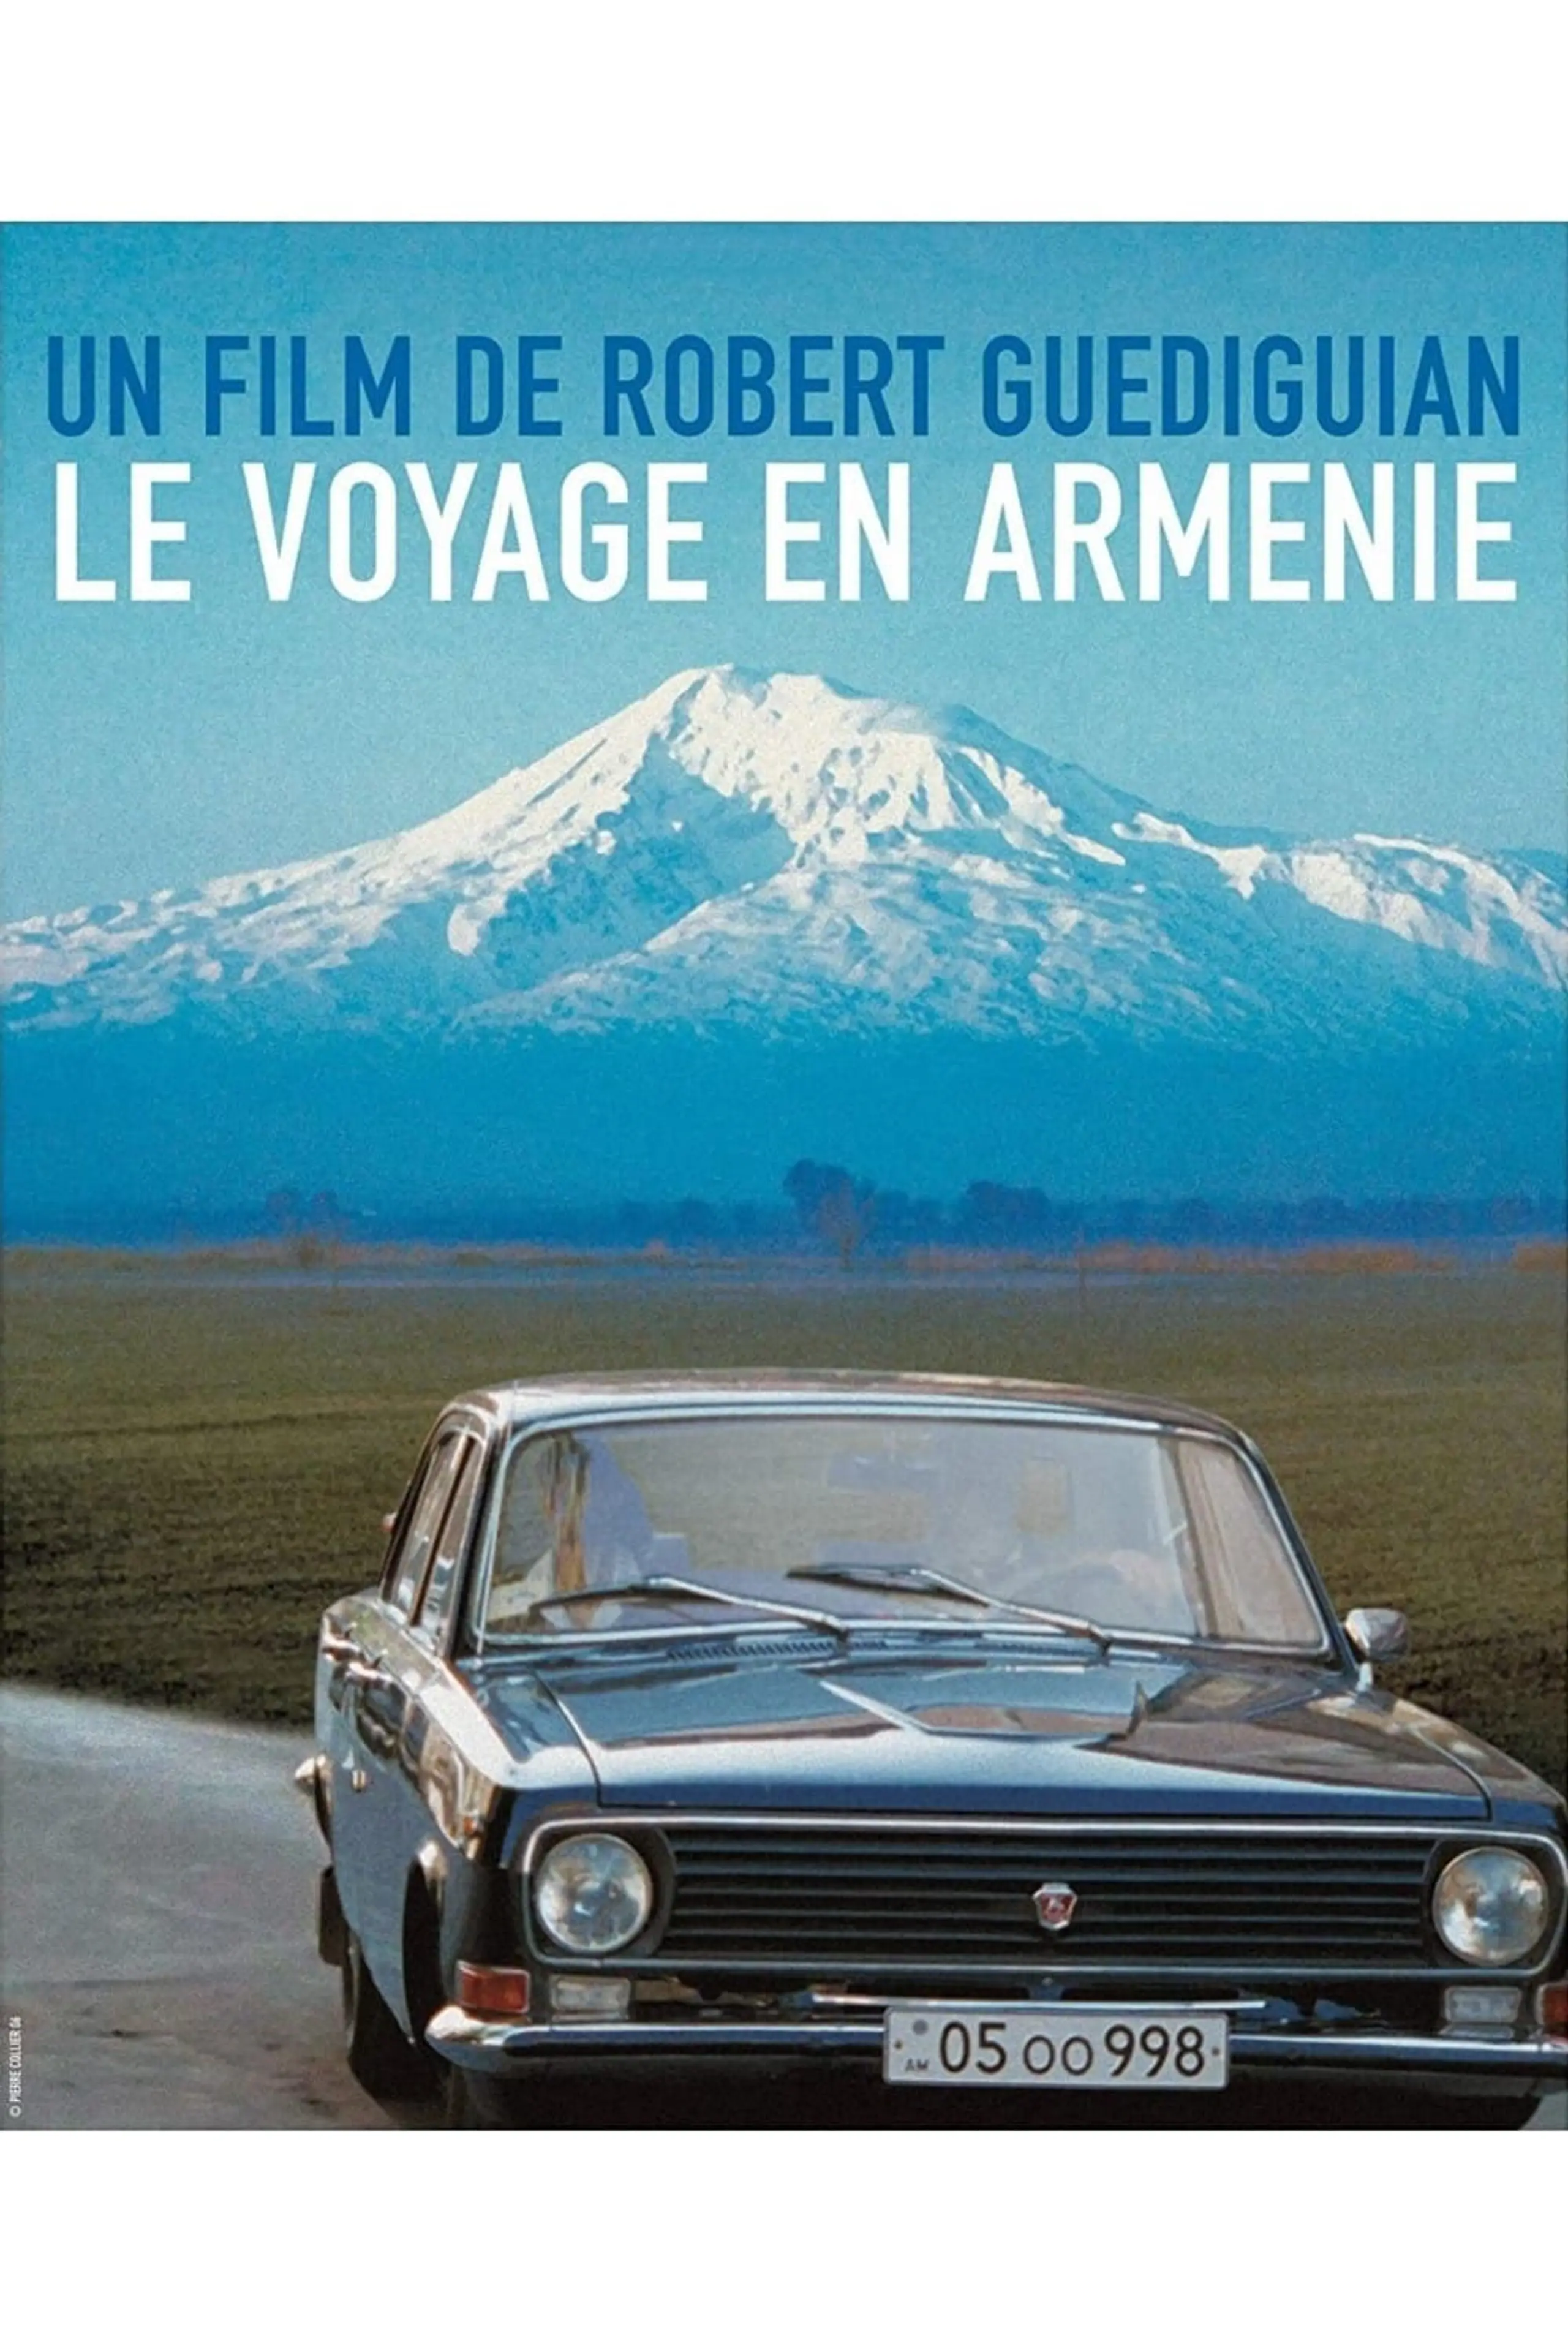 Le Voyage en Arménie